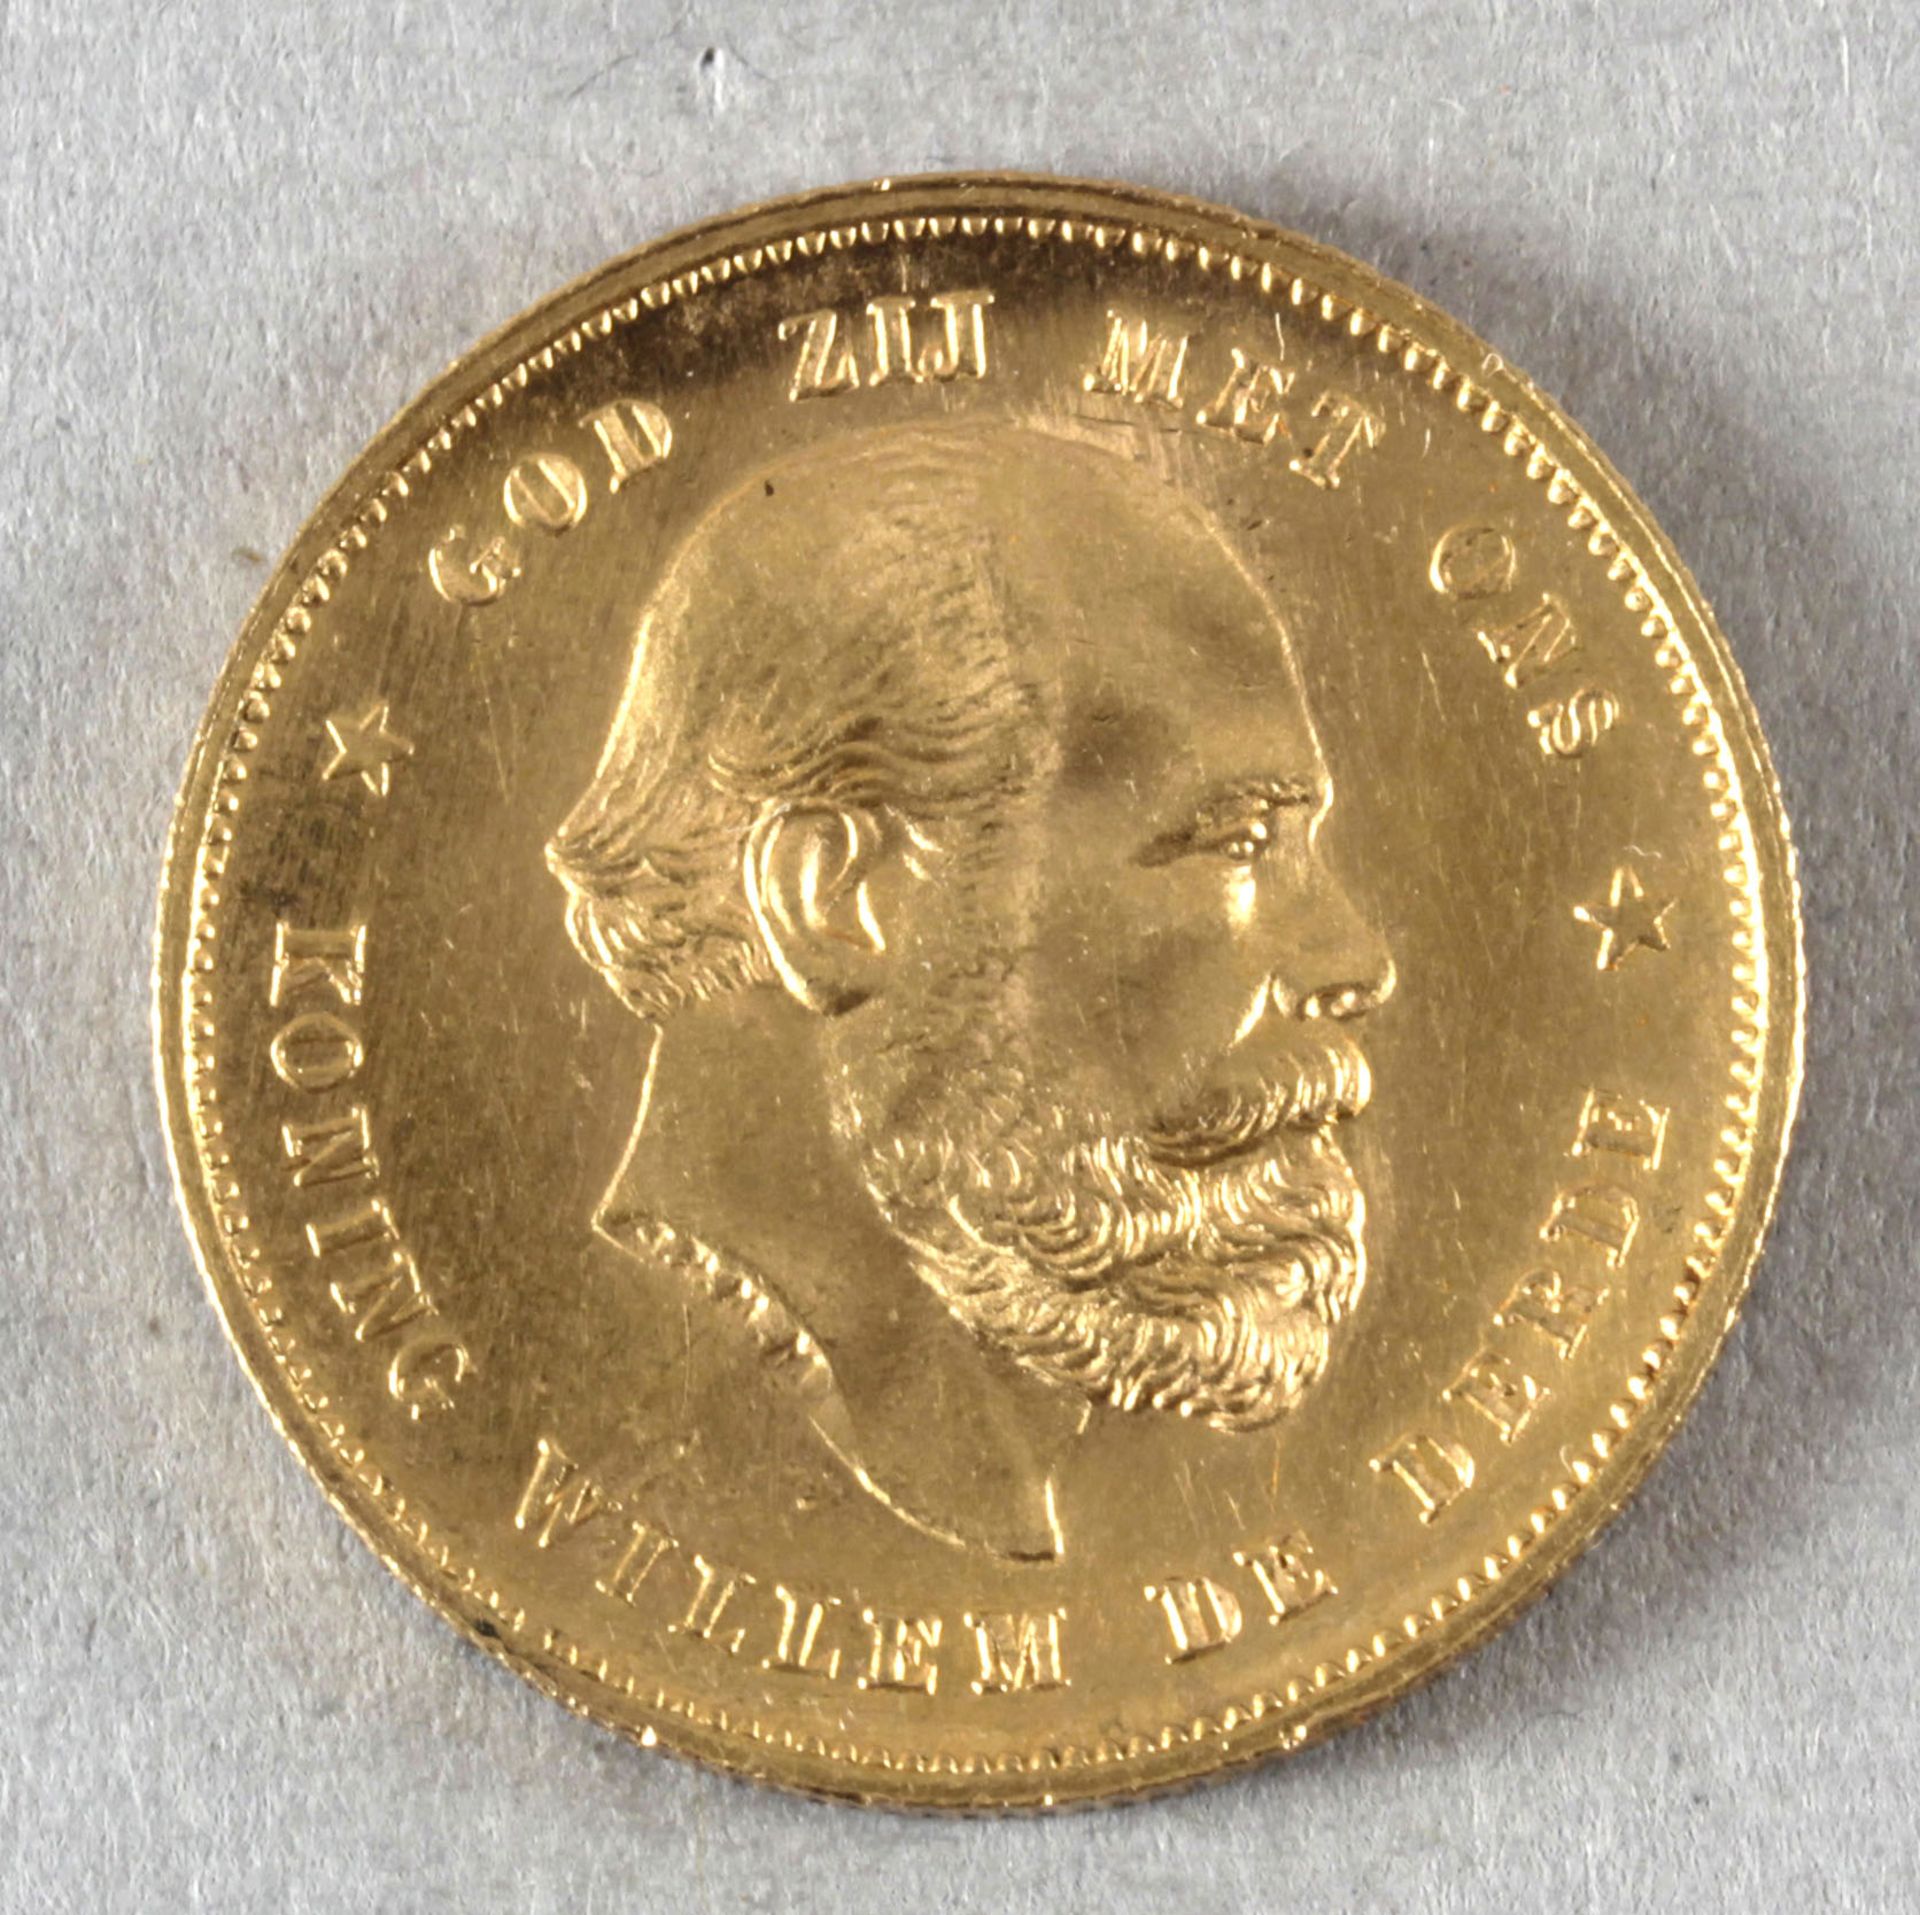 Goldmünze, 10 Gulden, Niederlande, 1879, Wilhelm III.